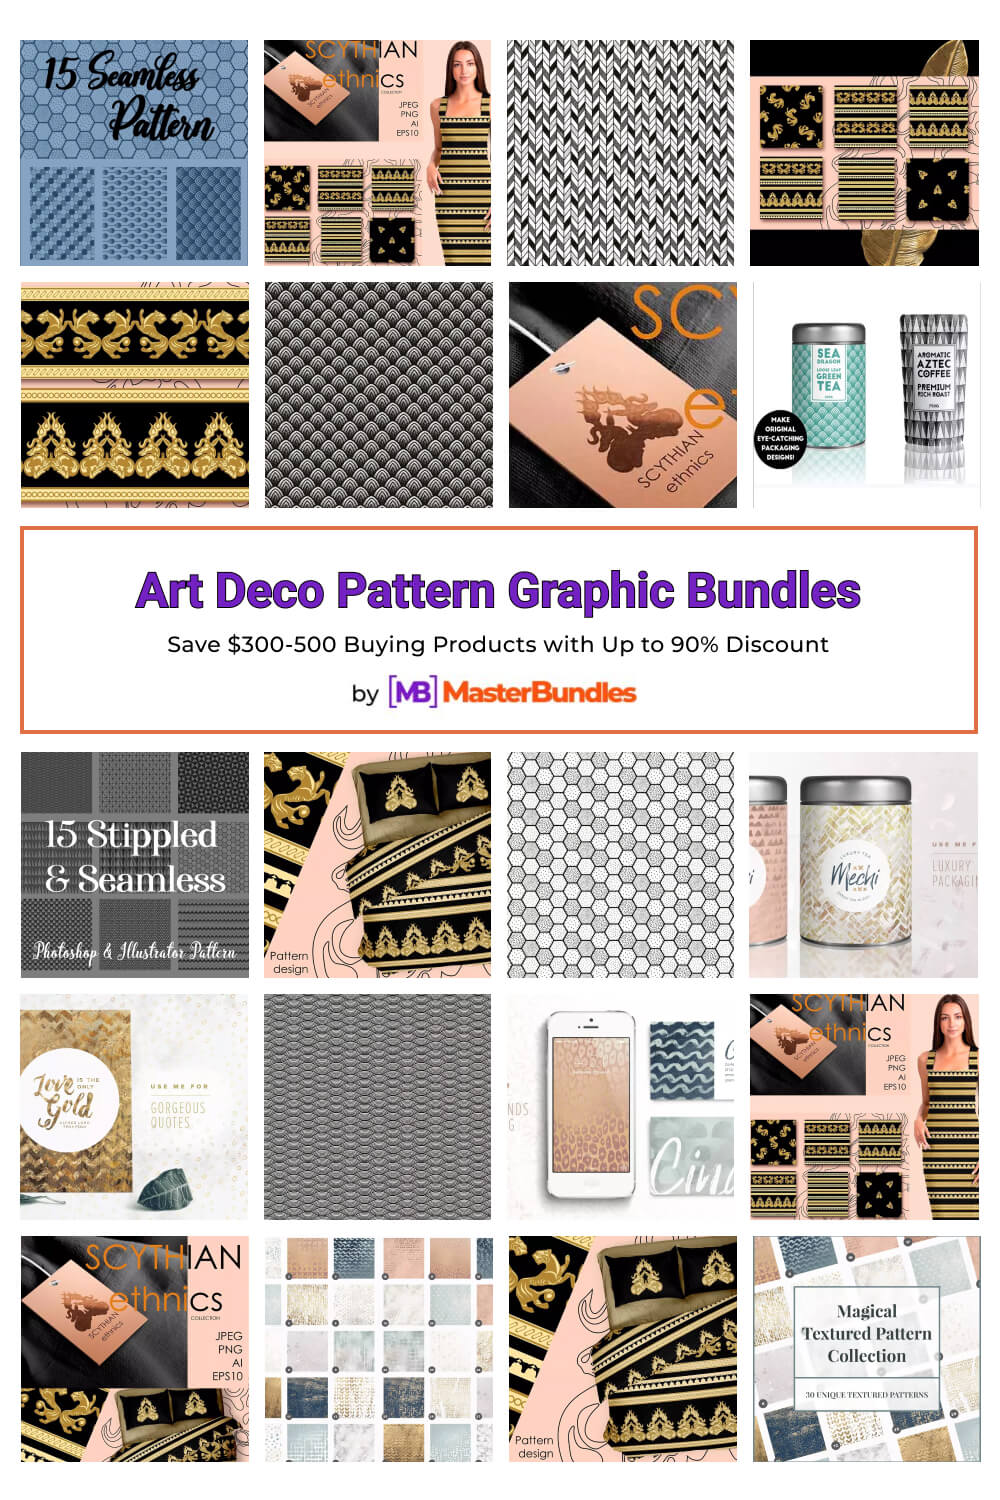 art deco pattern graphic bundles pinterest image.